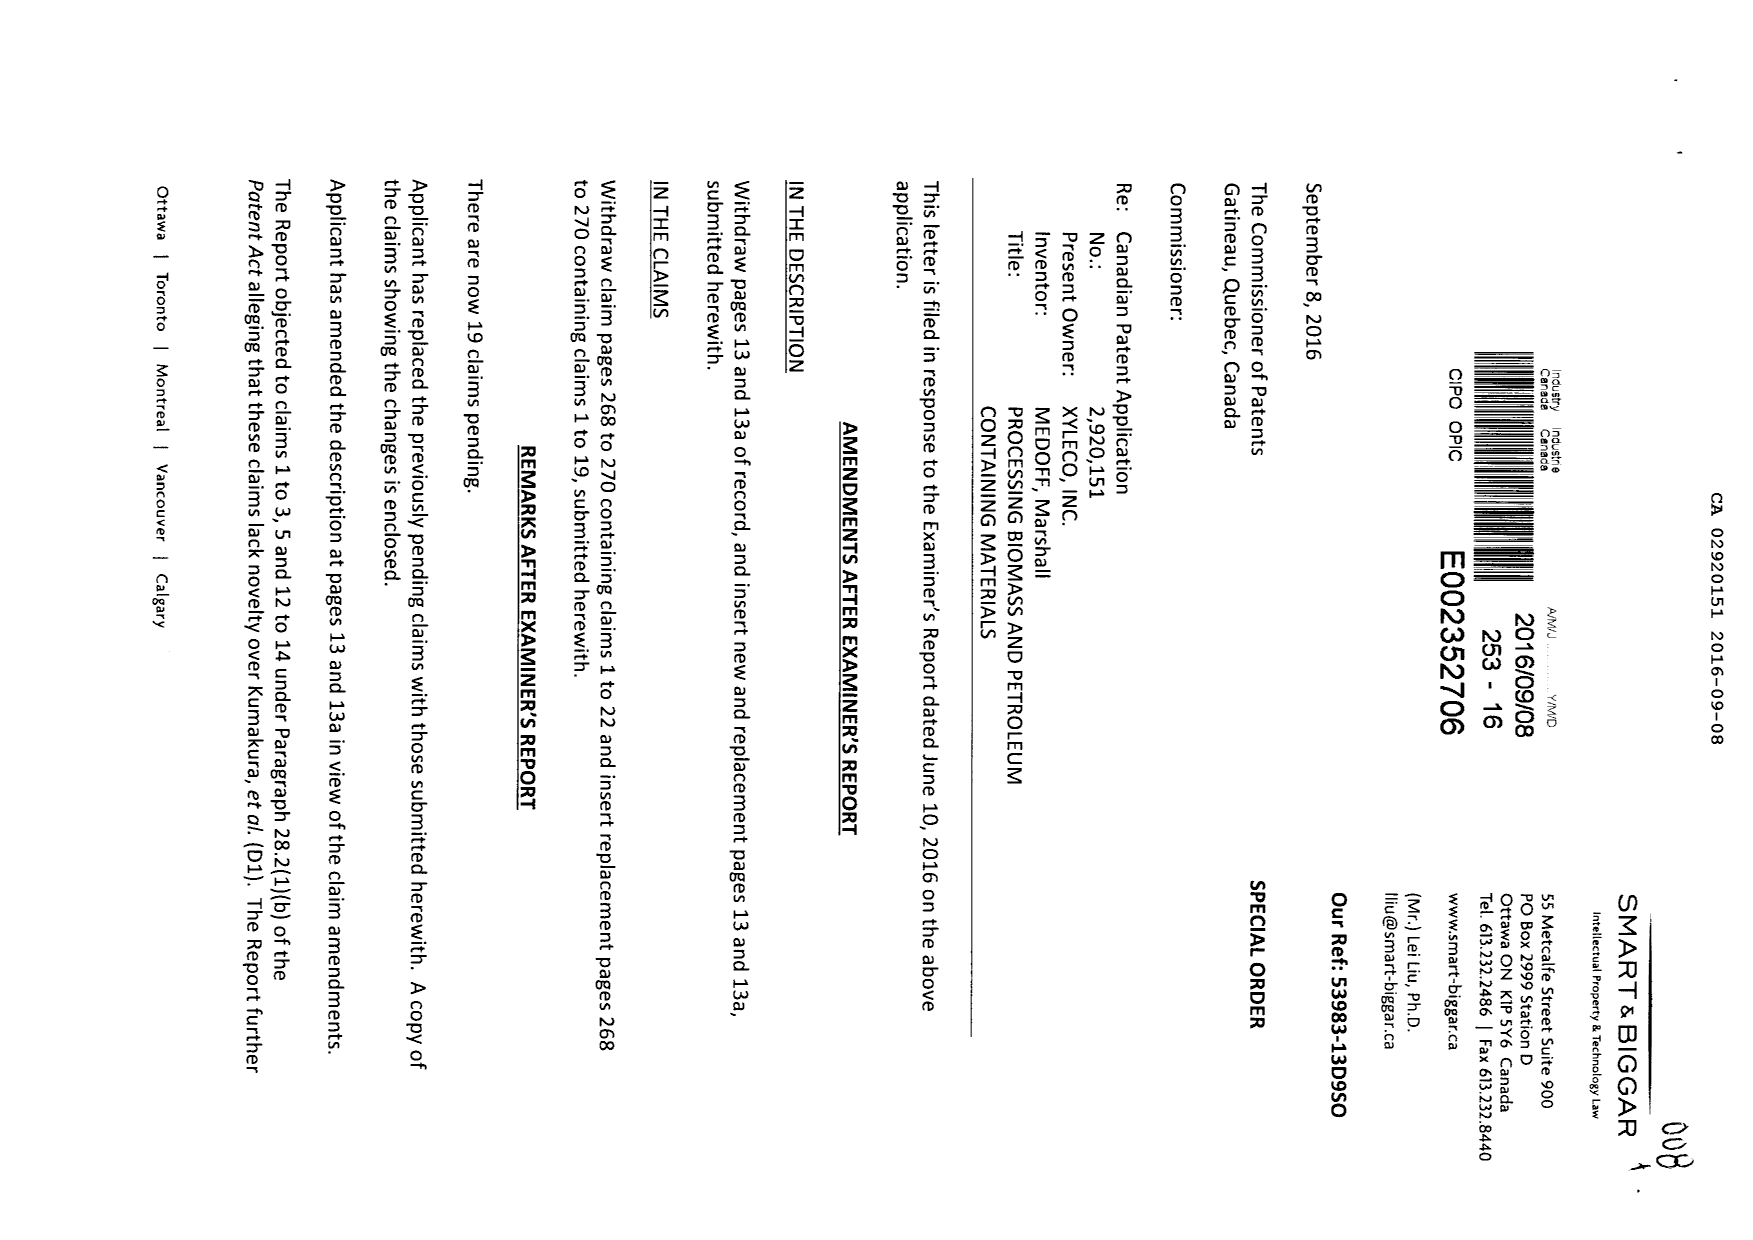 Document de brevet canadien 2920151. Poursuite-Amendment 20151208. Image 1 de 10